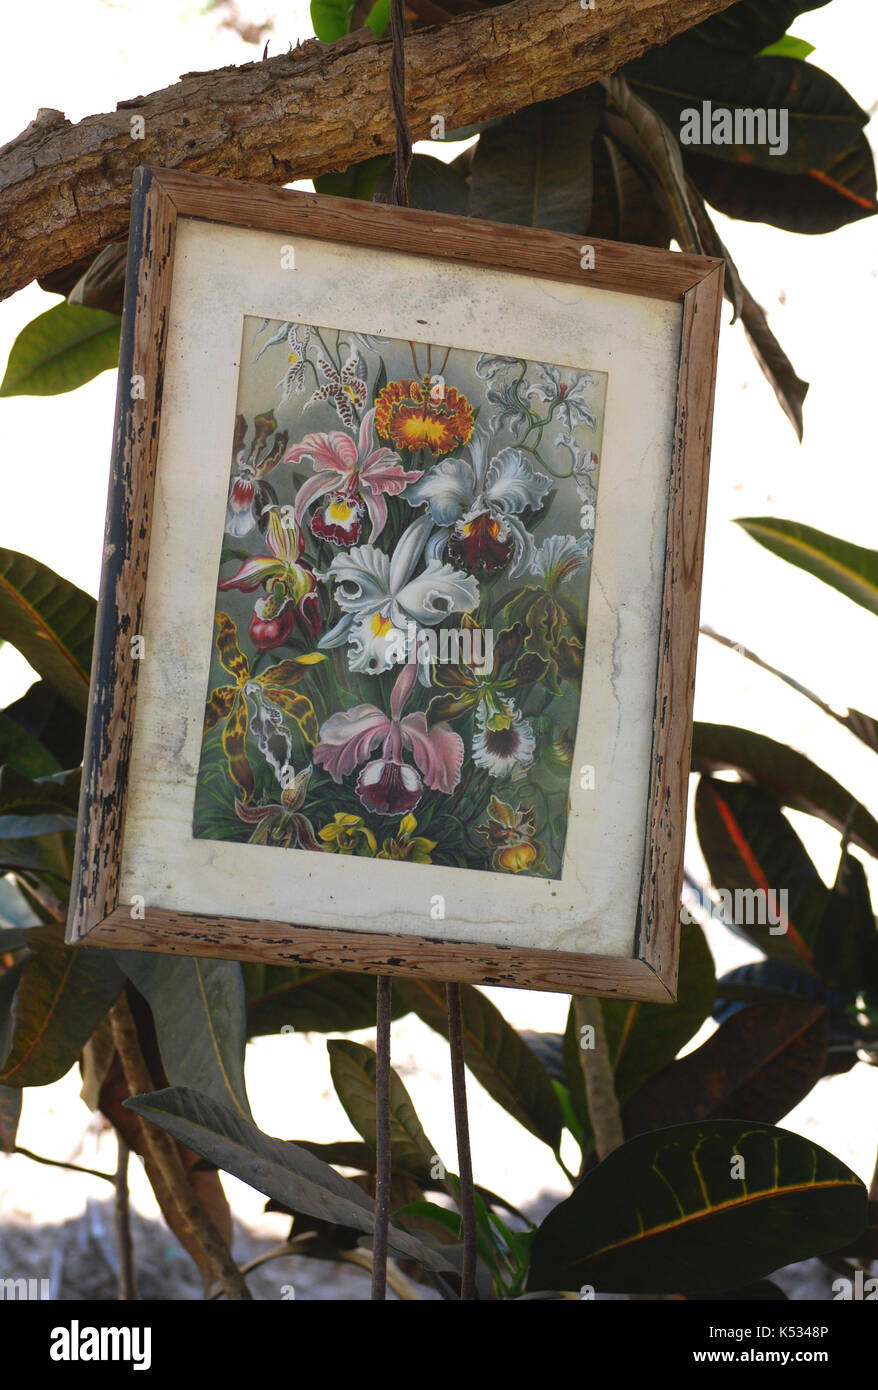 Gerahmte Vintage botanischen Drucken hängen von einem Baum im Freien im Vallarta Botanischer Garten - Cabo Corrientes, Jalisco, Mexiko Stockfoto